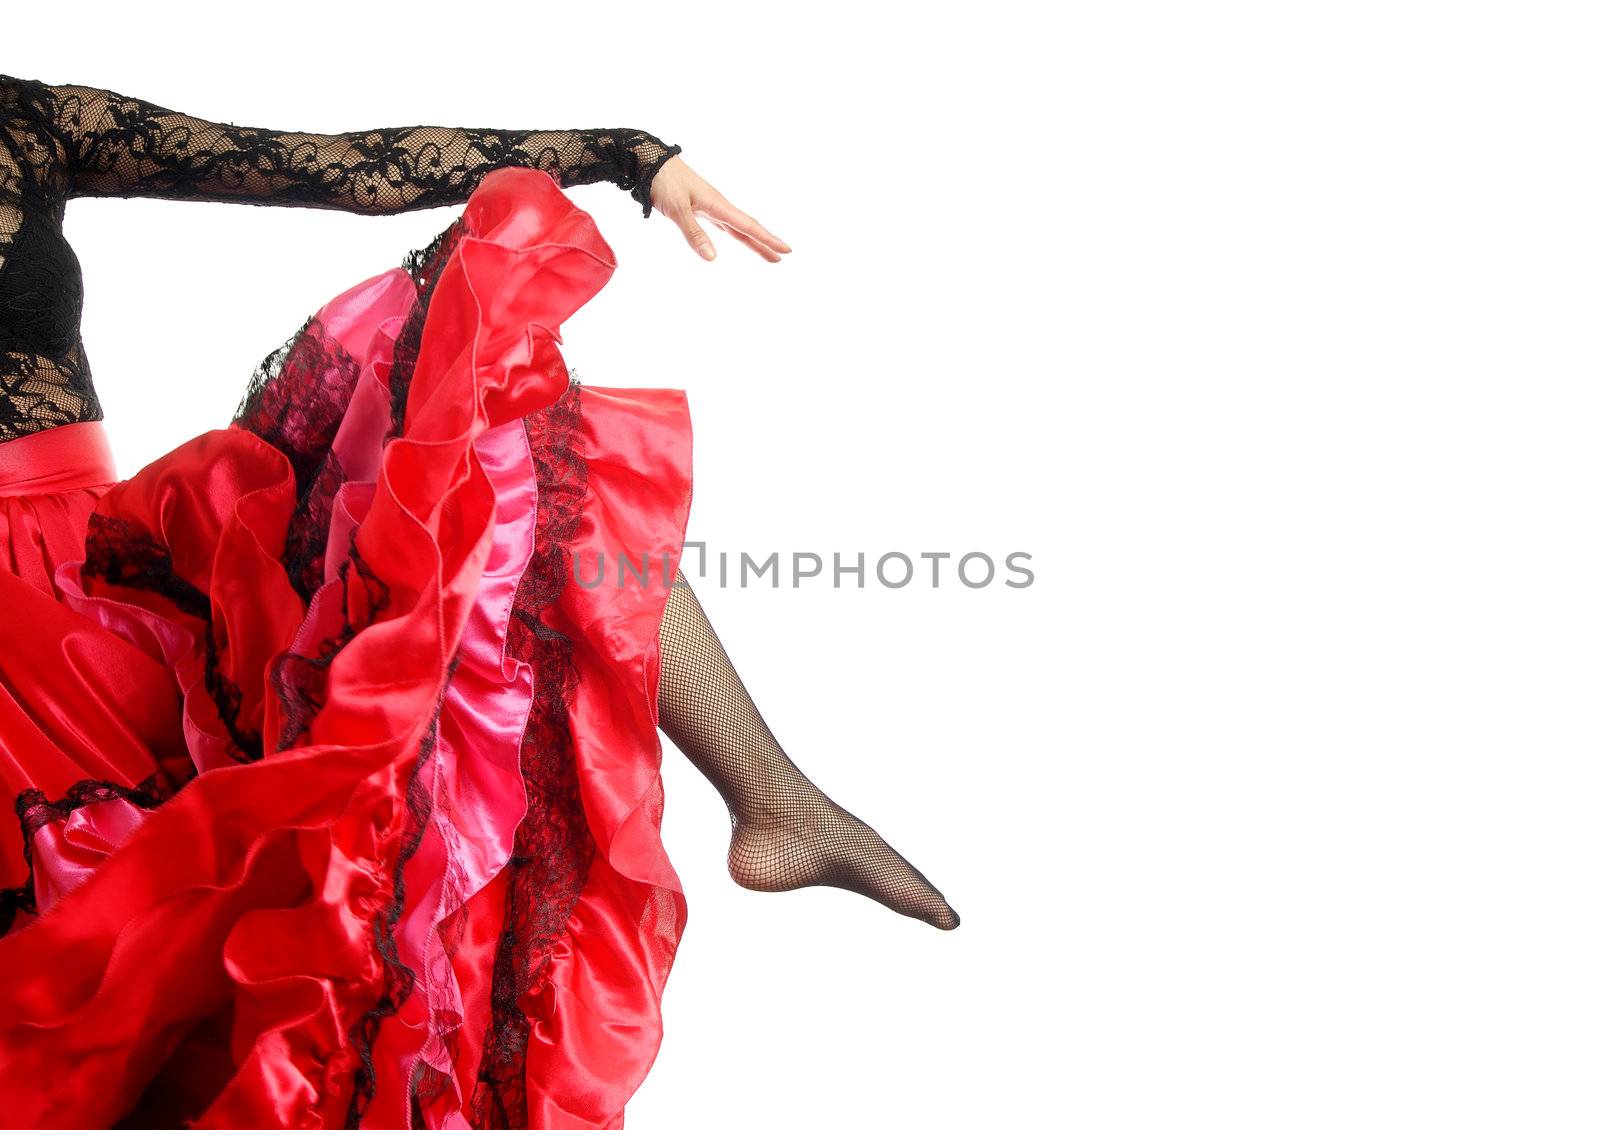 Flamenco pose by Novic